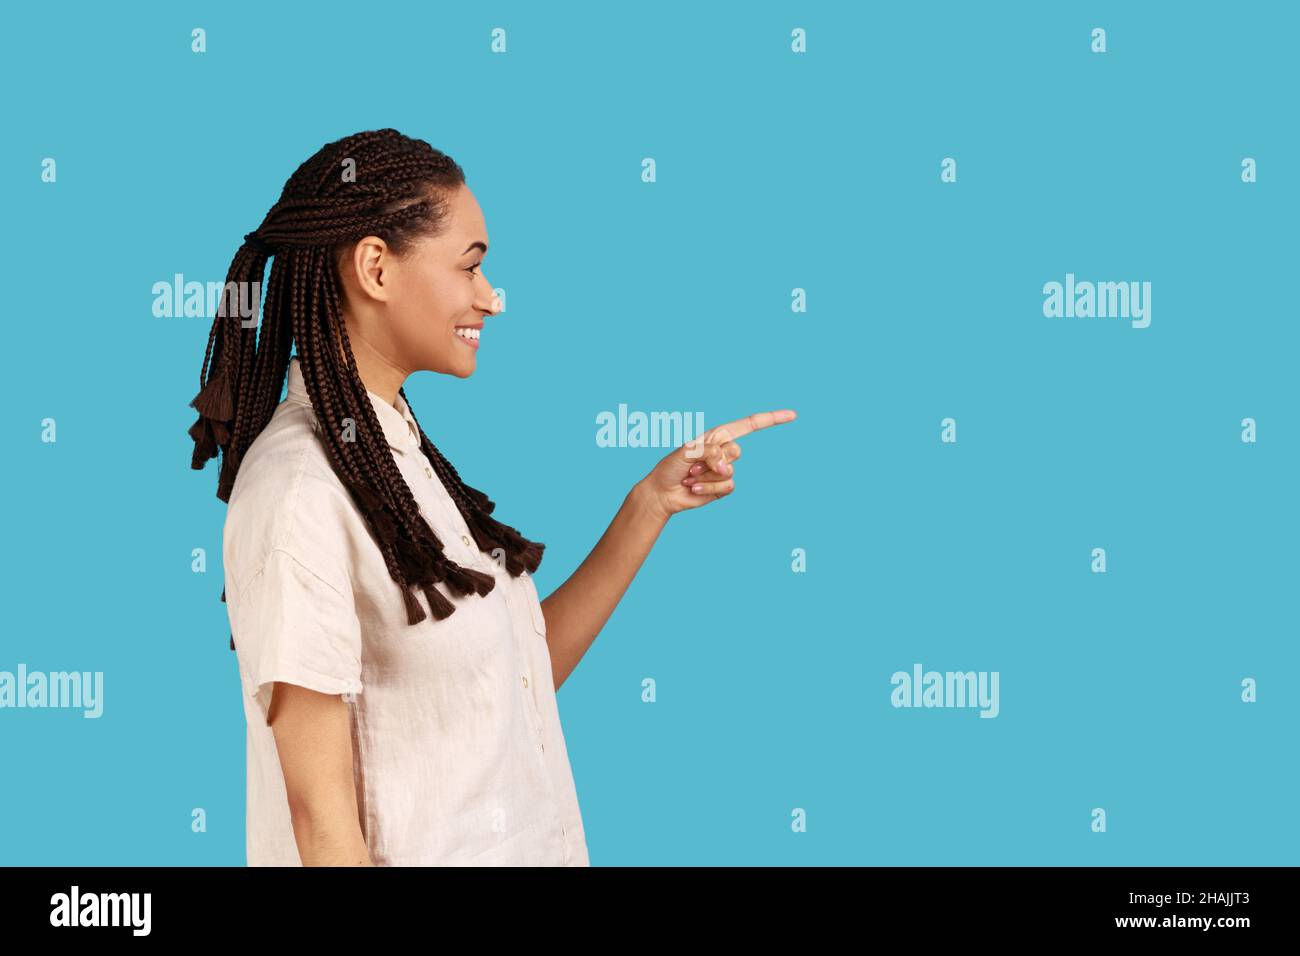 Vue latérale d'une femme souriante avec des dreadlocks noirs pointant vers l'extérieur avec le doigt, montrant un espace vide pour votre publicité, portant une chemise blanche.Studio d'intérieur isolé sur fond bleu. Banque D'Images